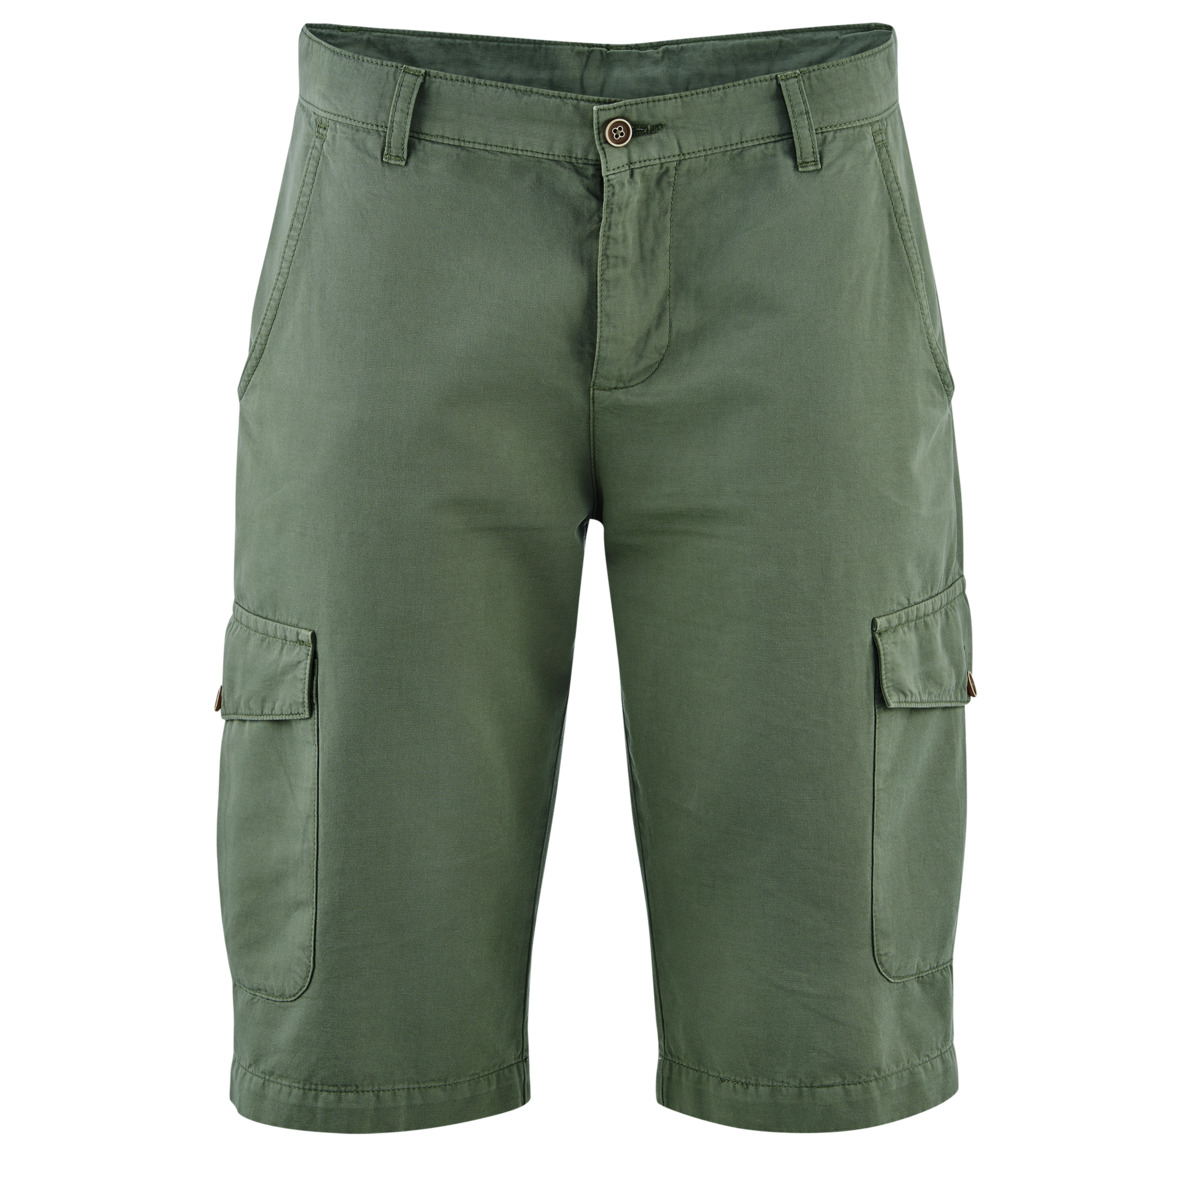 Khaki Bermuda shorts, CEDRIC